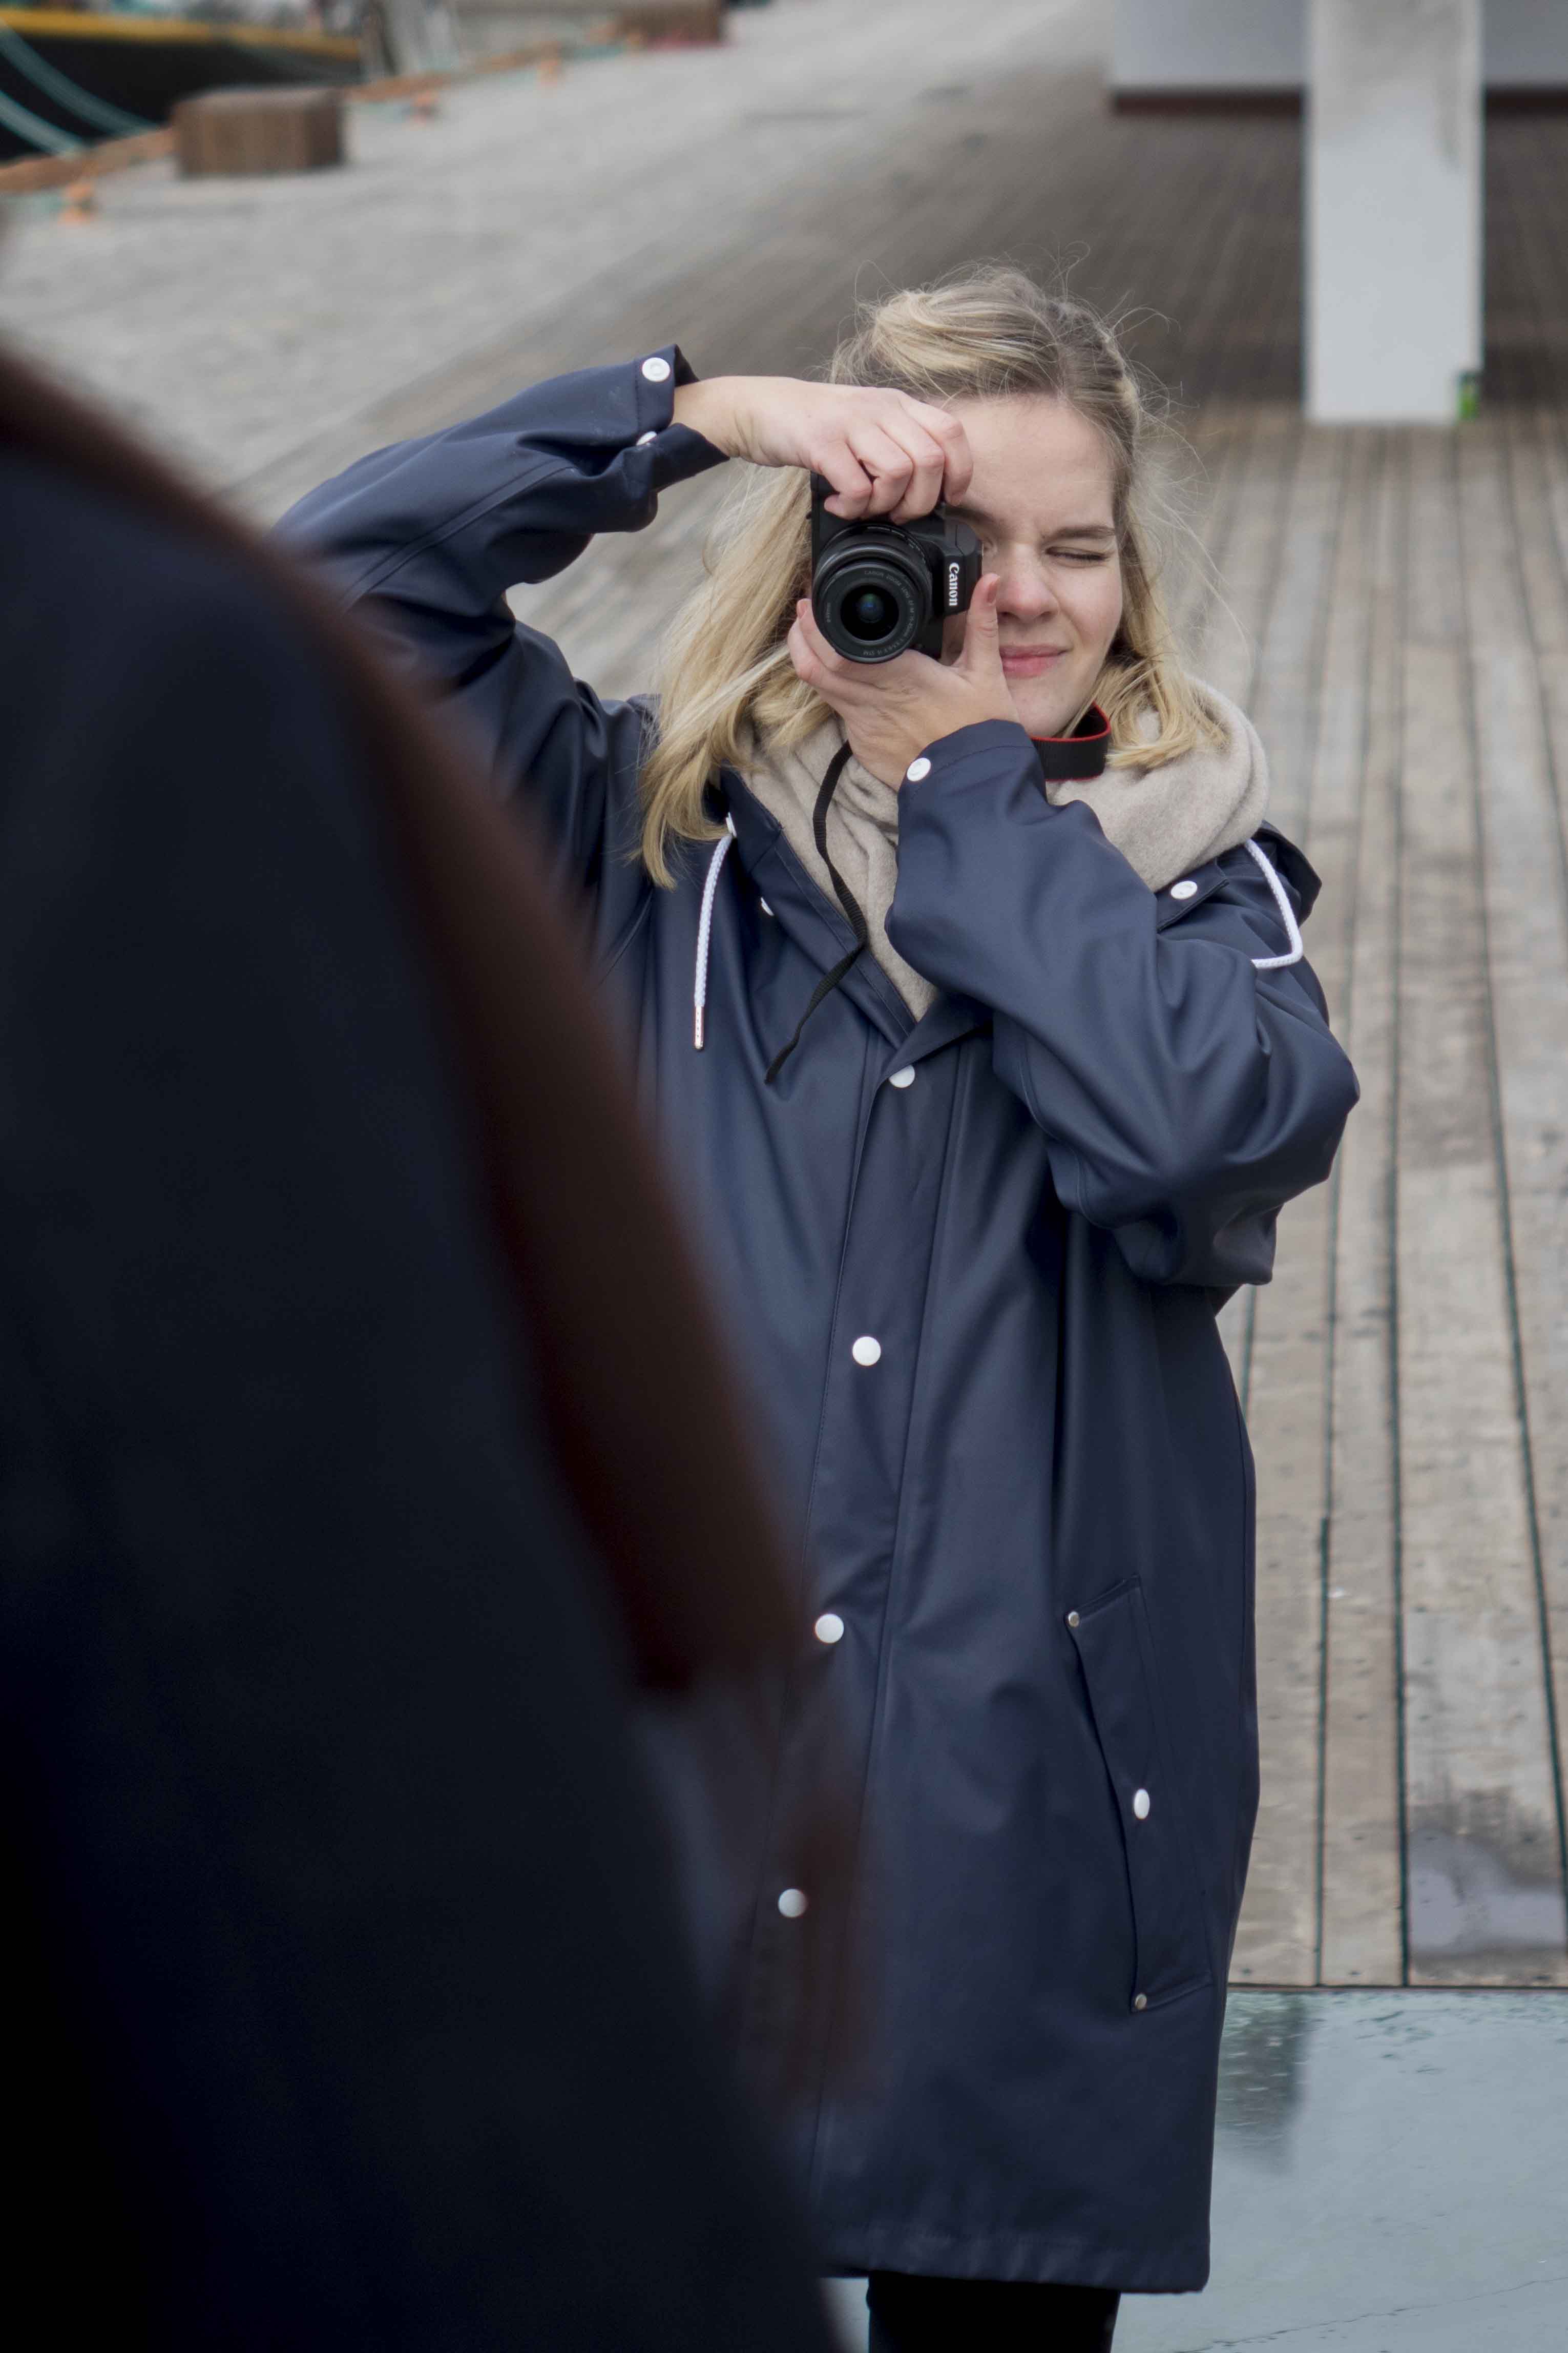 Student på Digital innholdsproduksjon på Fagskolen Kristiania, Lisa Fallet Kløfta, tar bilde av en medstudent.